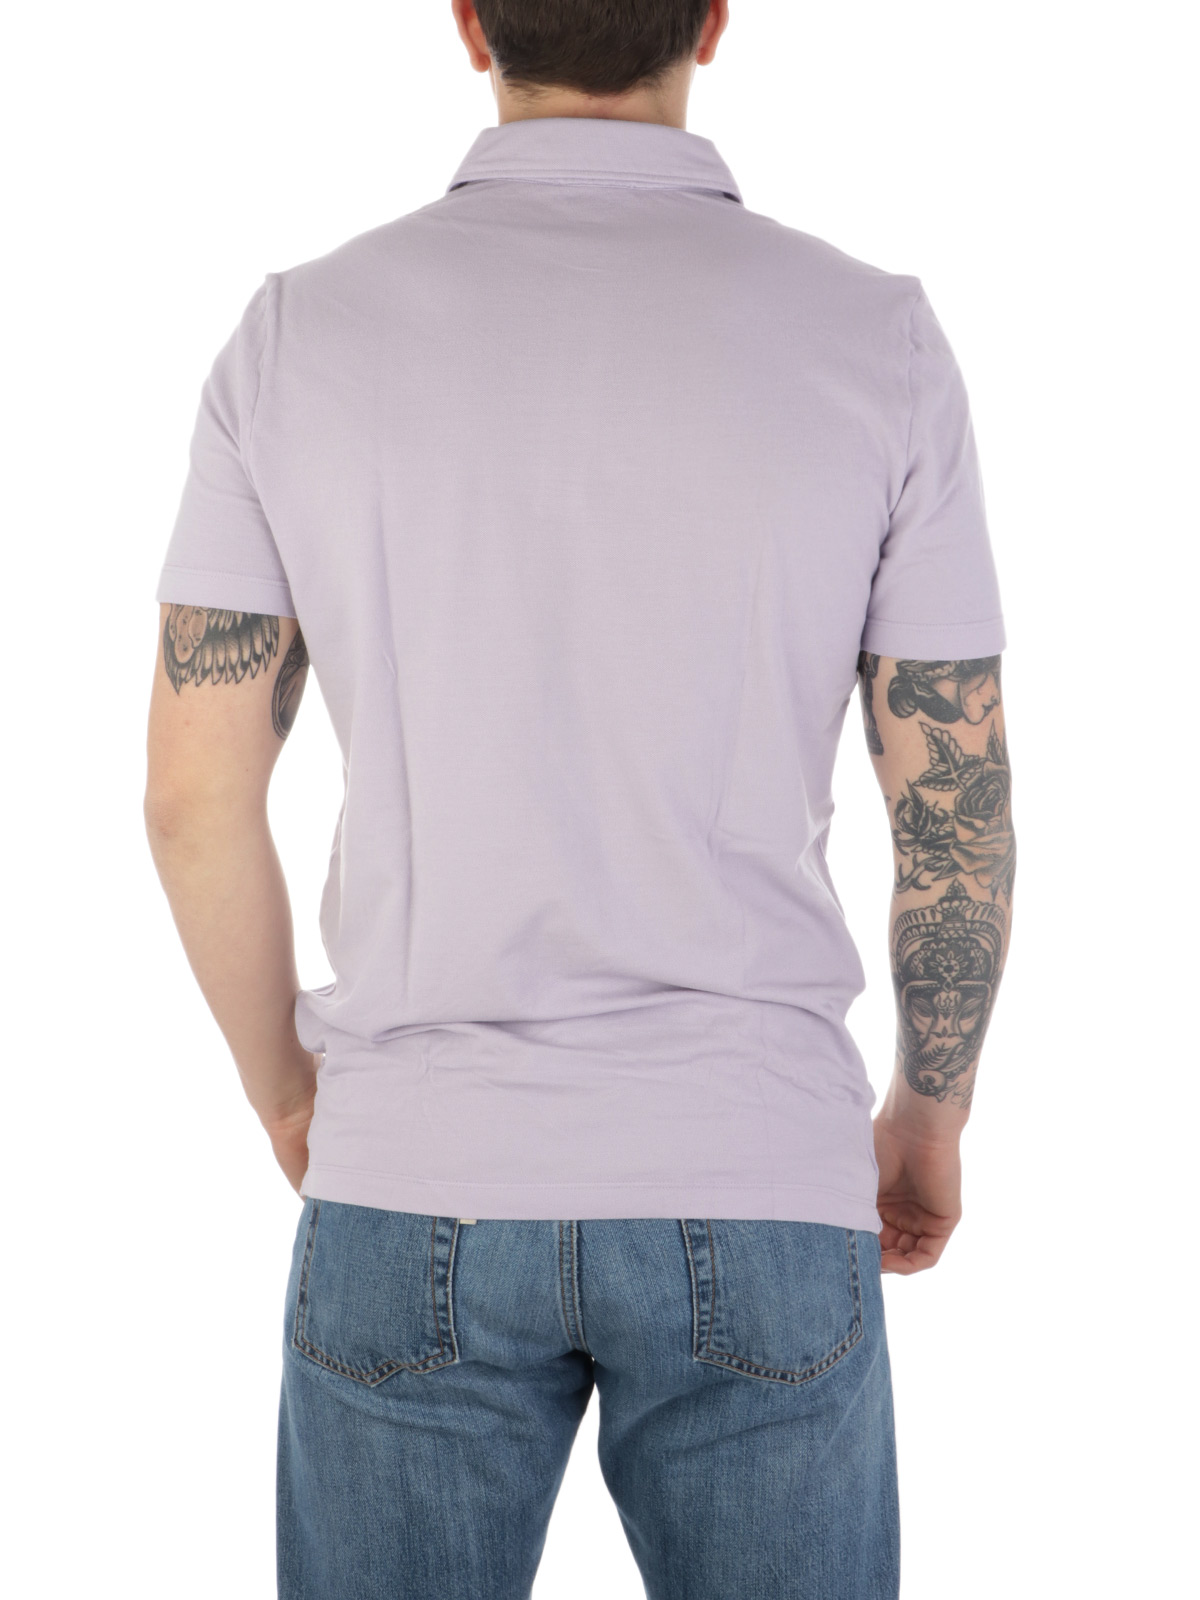 Picture of ALTEA | Men's Piquè Cotton Polo Shirt